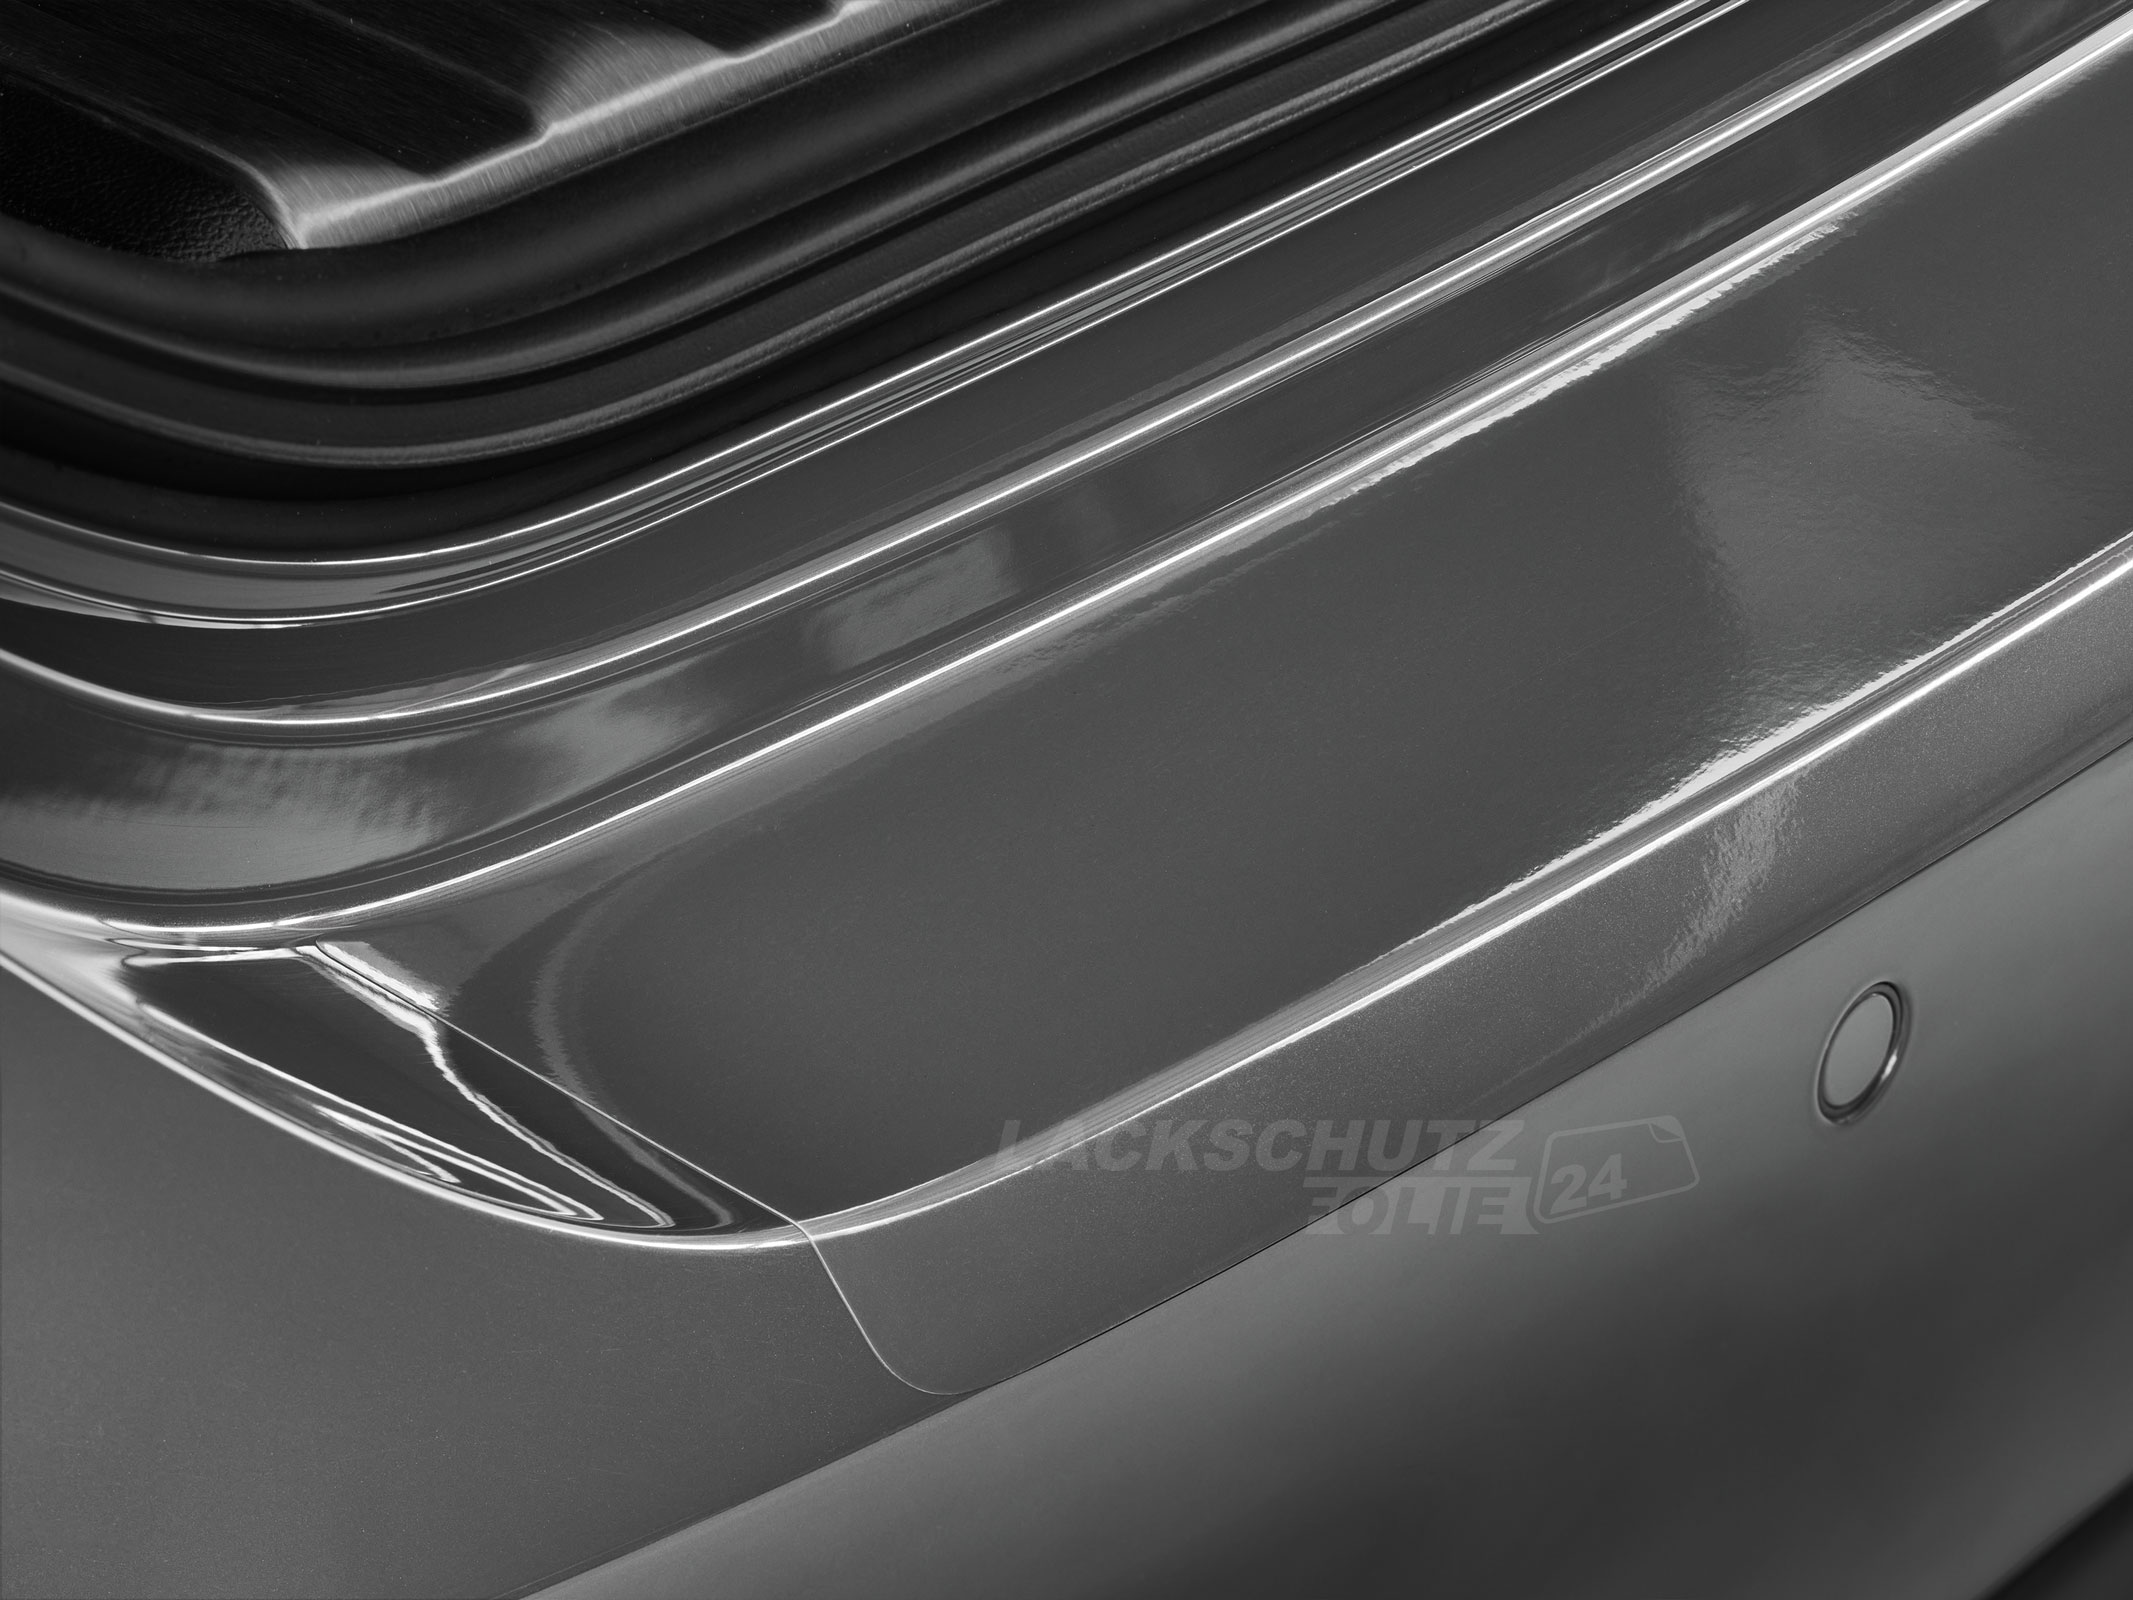 Ladekantenschutzfolie - Transparent Glatt Hochglänzend 240 µm stark für BMW X5 Typ E70, BJ 2006-2013